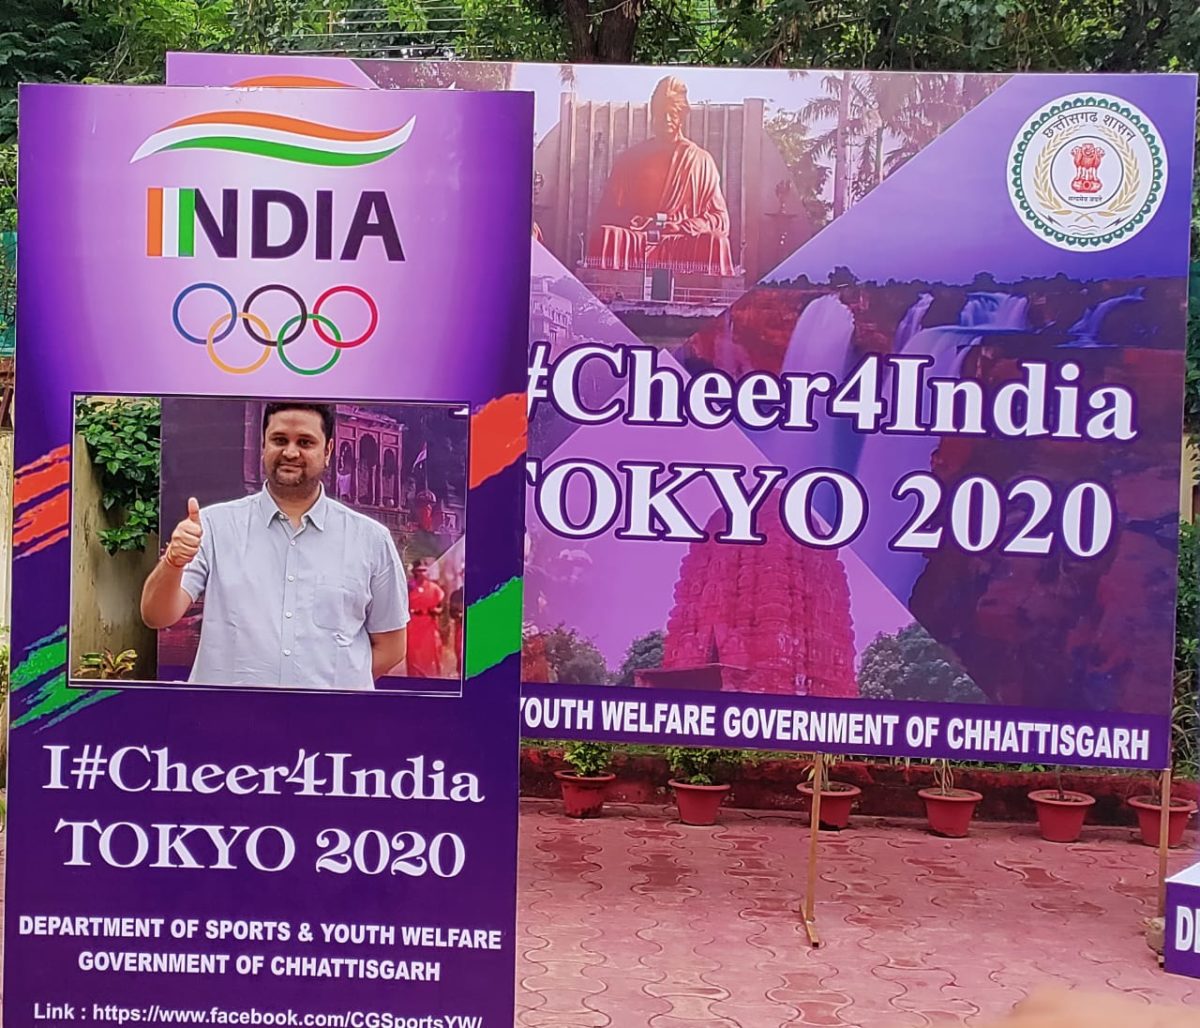 रायपुर ; ओलम्पिक में भाग लेने वाले भारतीय खिलाड़ियों का उत्साहवर्द्धन करने राजधानी के विभिन्न स्थानों पर बनाए सेल्फी जोन